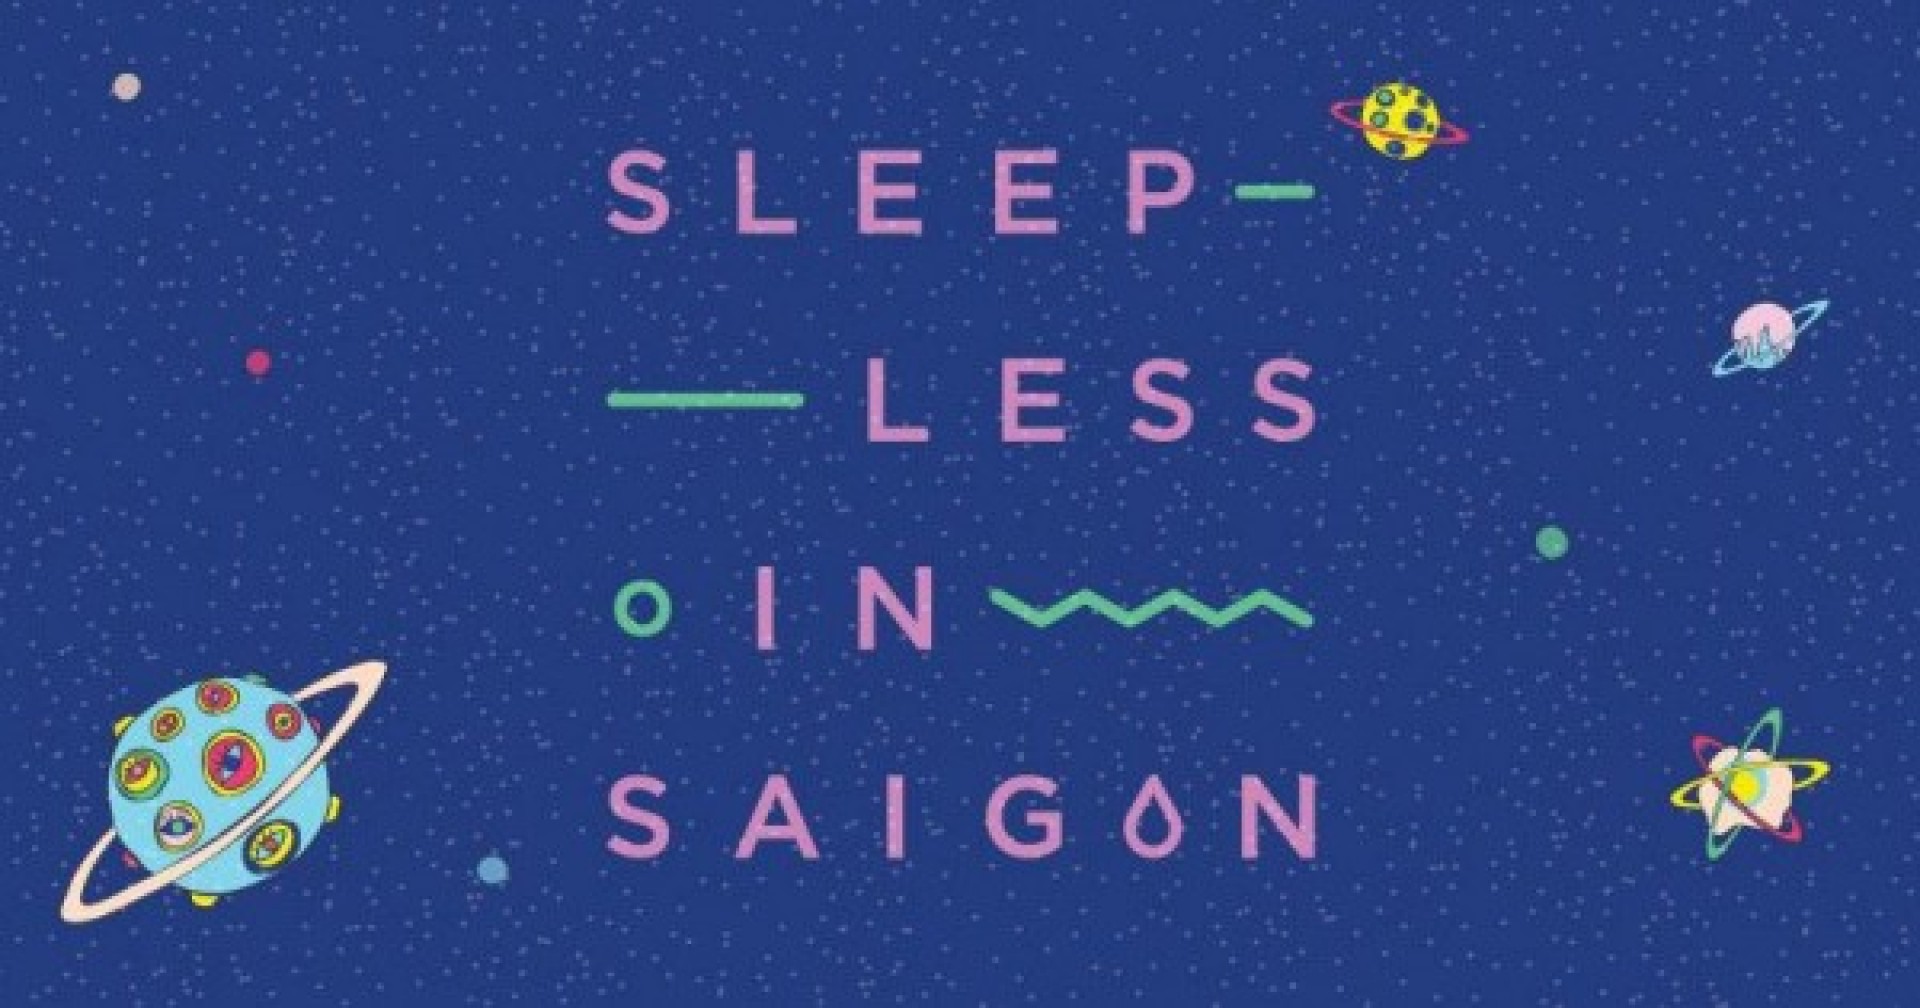 [HCM] Sleepless In Saigon Café Tuyển Dụng Nhân Viên Part-Time / Full-Time Tháng 6/2017